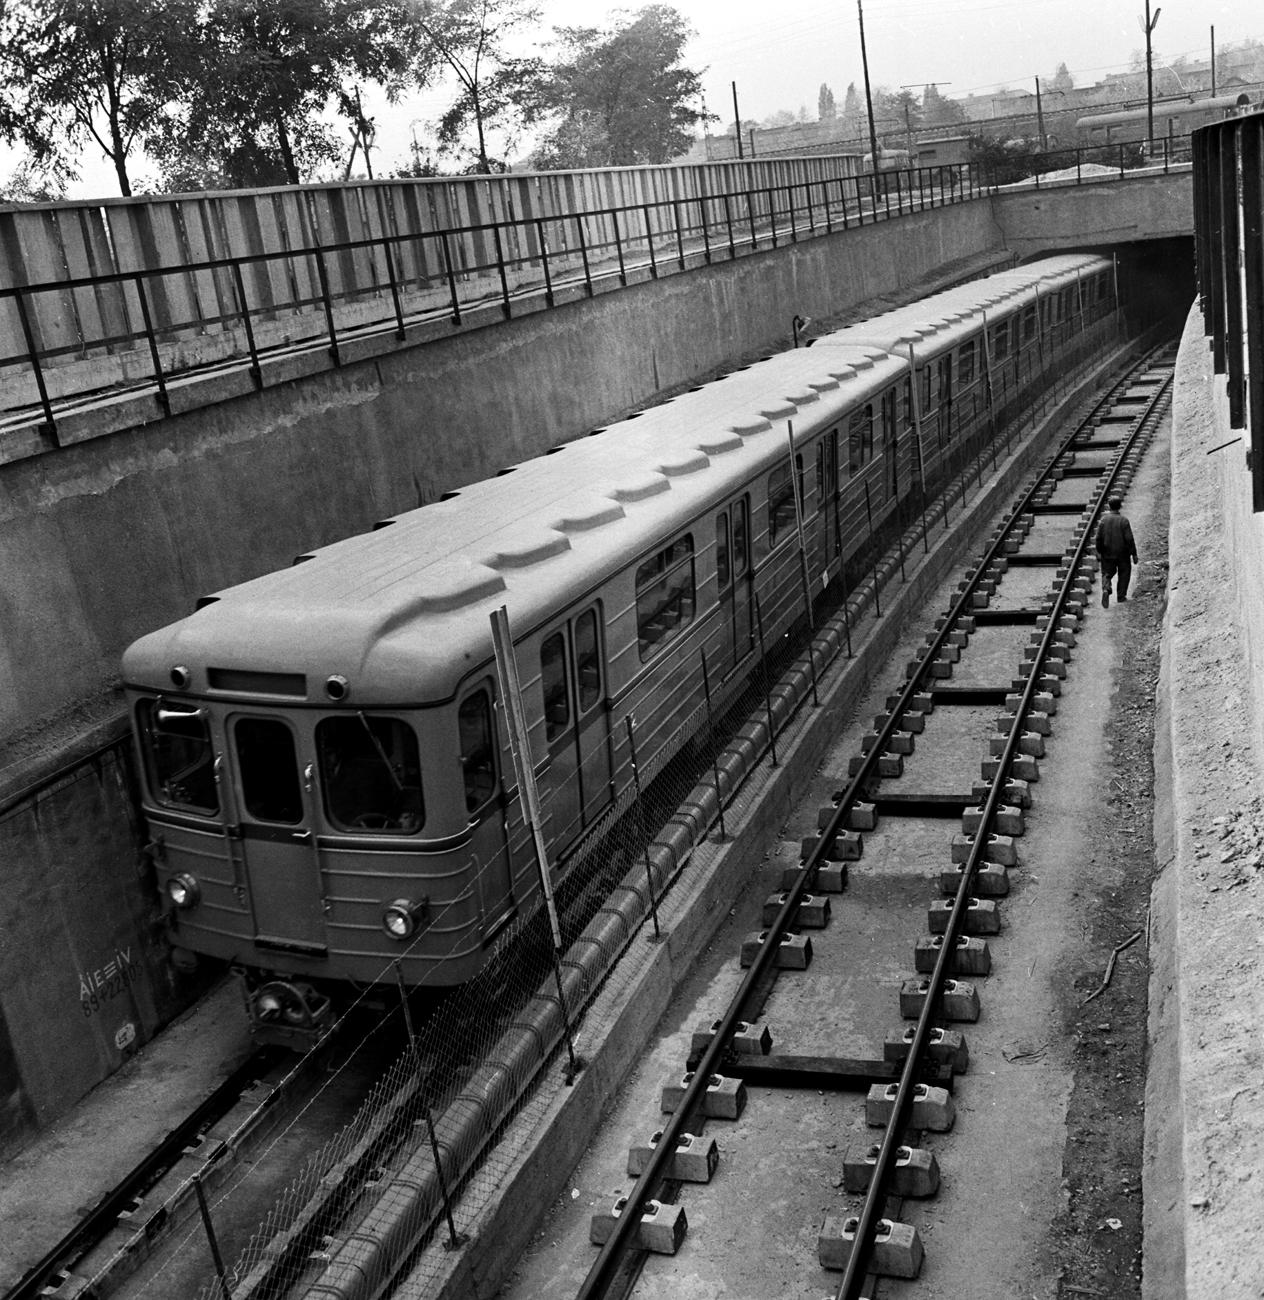 Könnyen lehet, hogy a fotón látható, több mint negyvenéves szerelvény még ma is jár a metróban. Vagy nemrég vonták csak ki a forgalomból. Amikor ez a kép készült, 1968-ban, még próbaúton tesztelték a kettes metró első, a Deák tértől a Fehér útig futó